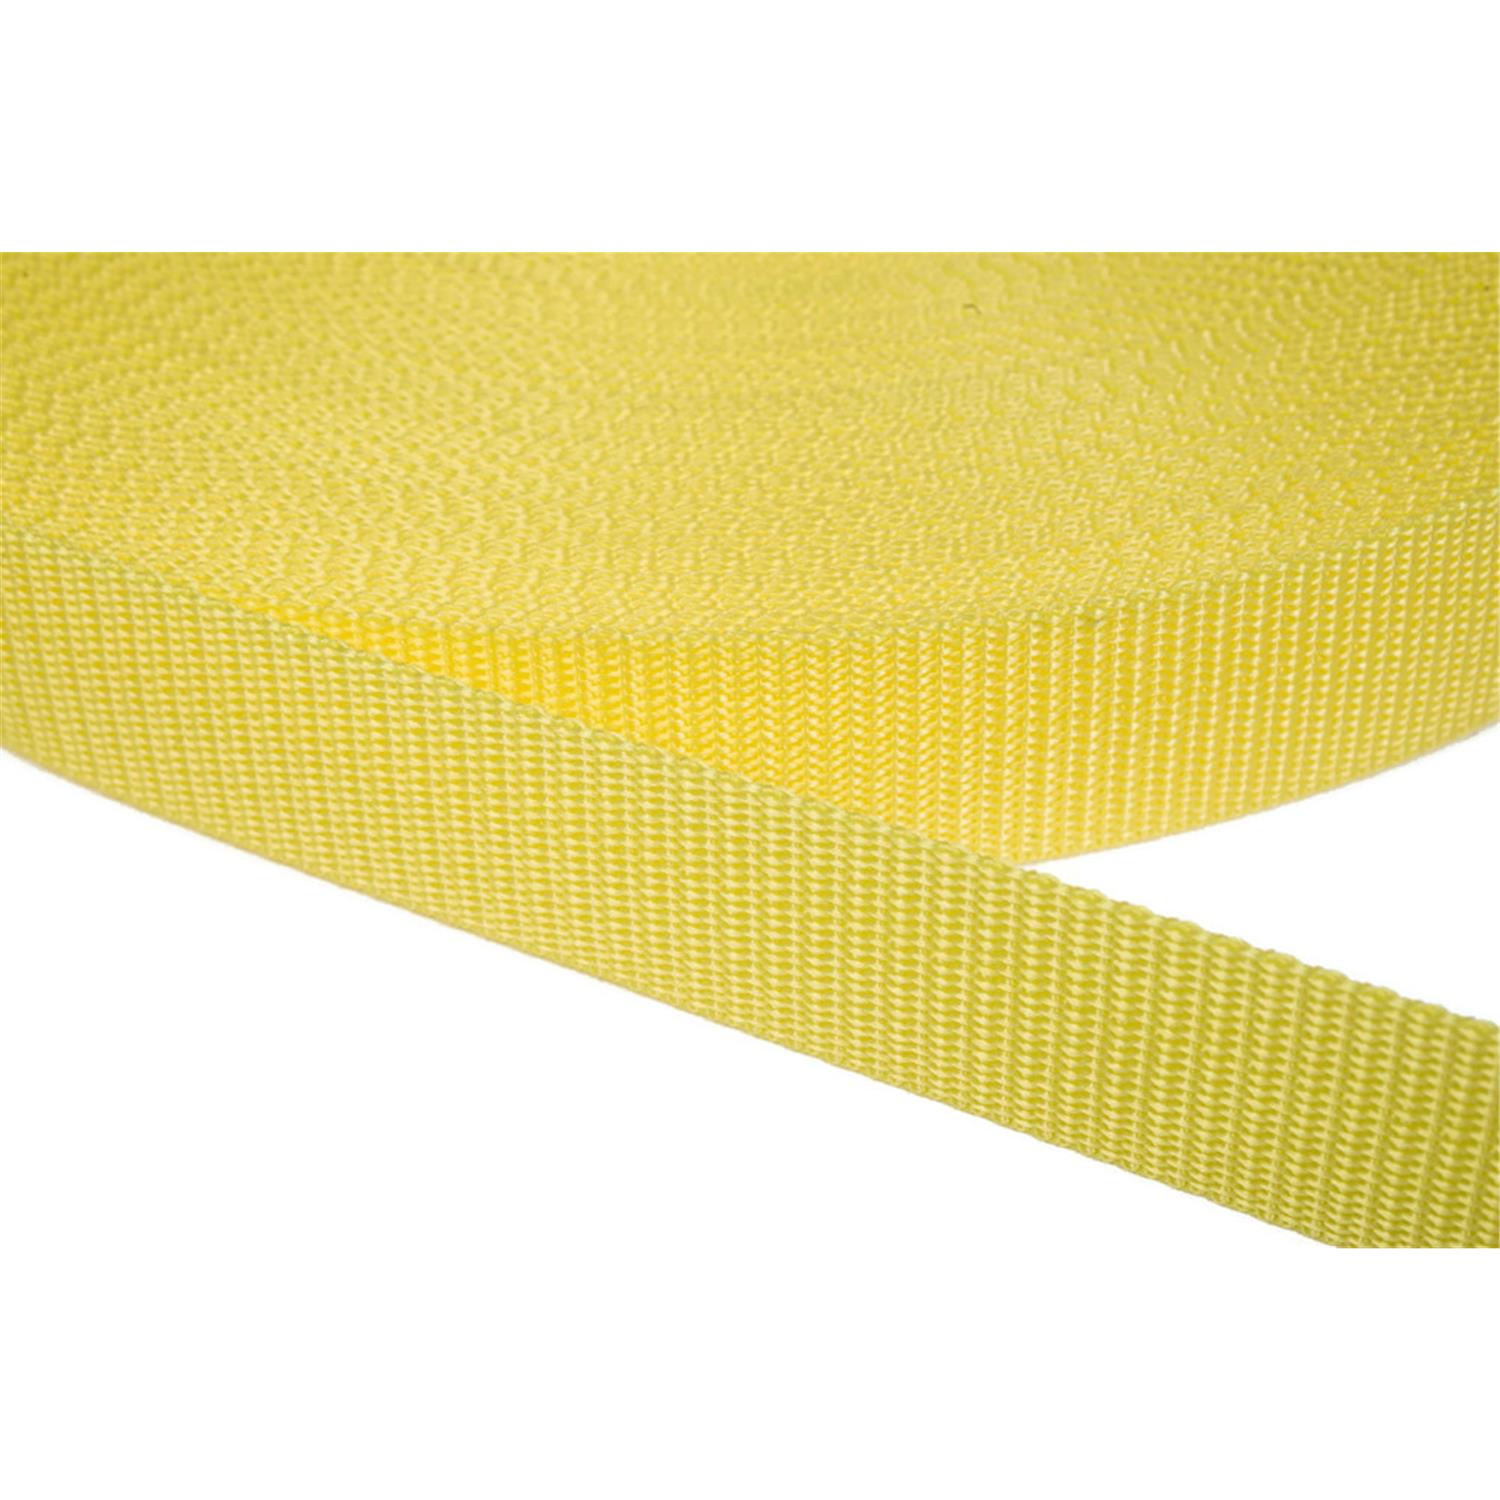 Gurtband 25mm breit aus Polypropylen in 41 Farben 09 - zitronengelb 12 Meter